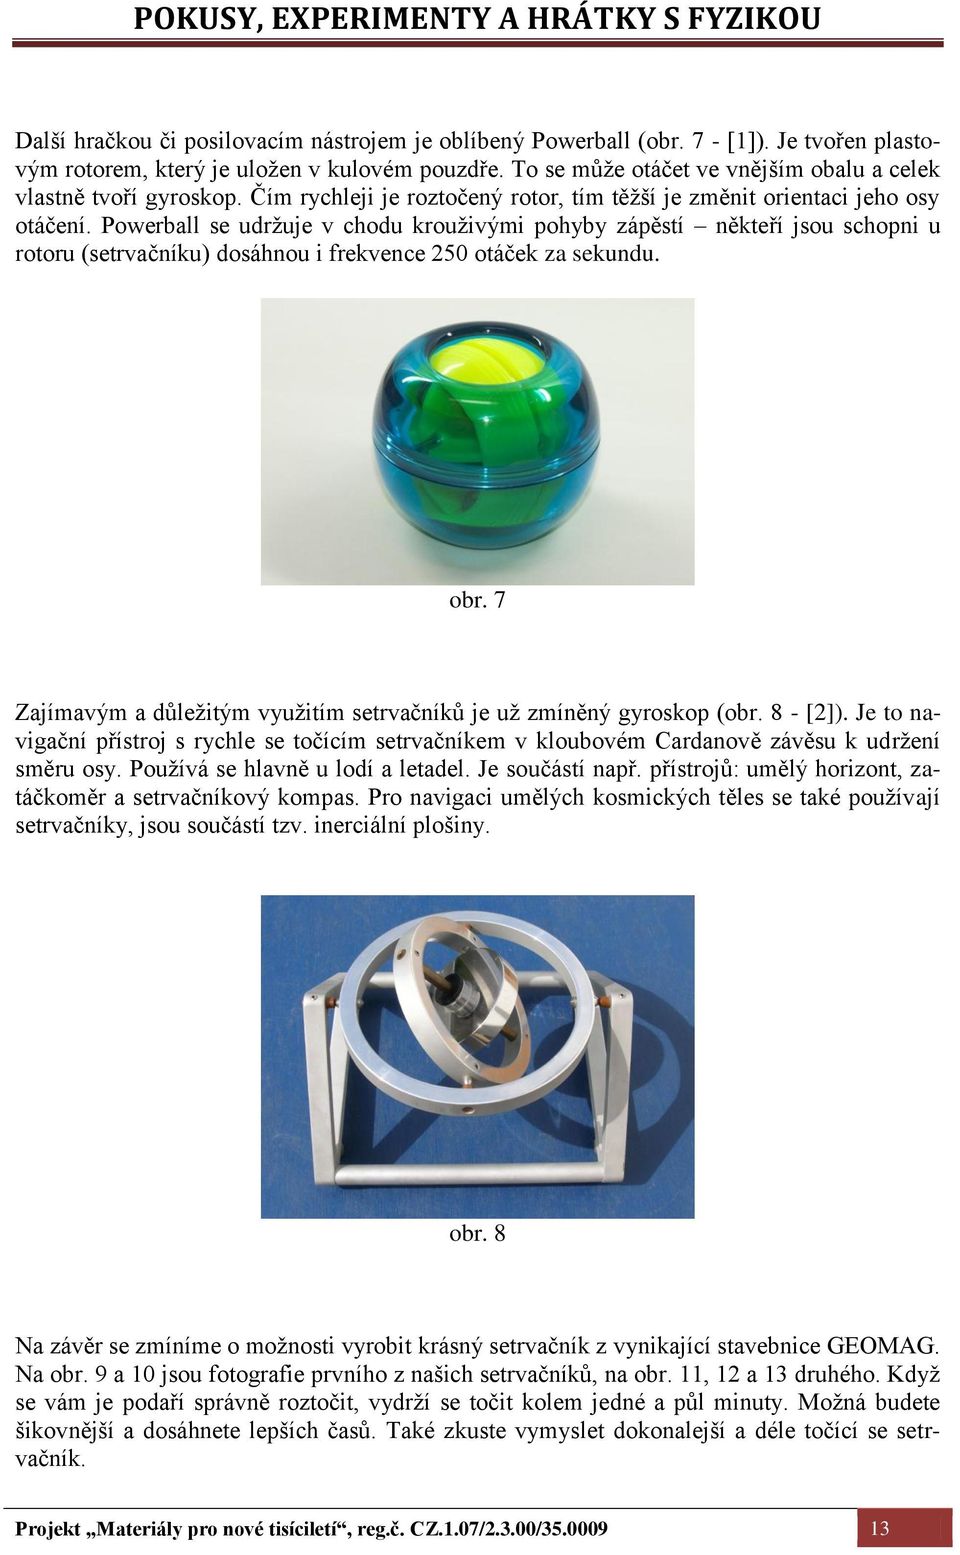 Powerball se udržuje v chodu krouživými pohyby zápěstí někteří jsou schopni u rotoru (setrvačníku) dosáhnou i frekvence 250 otáček za sekundu. obr.